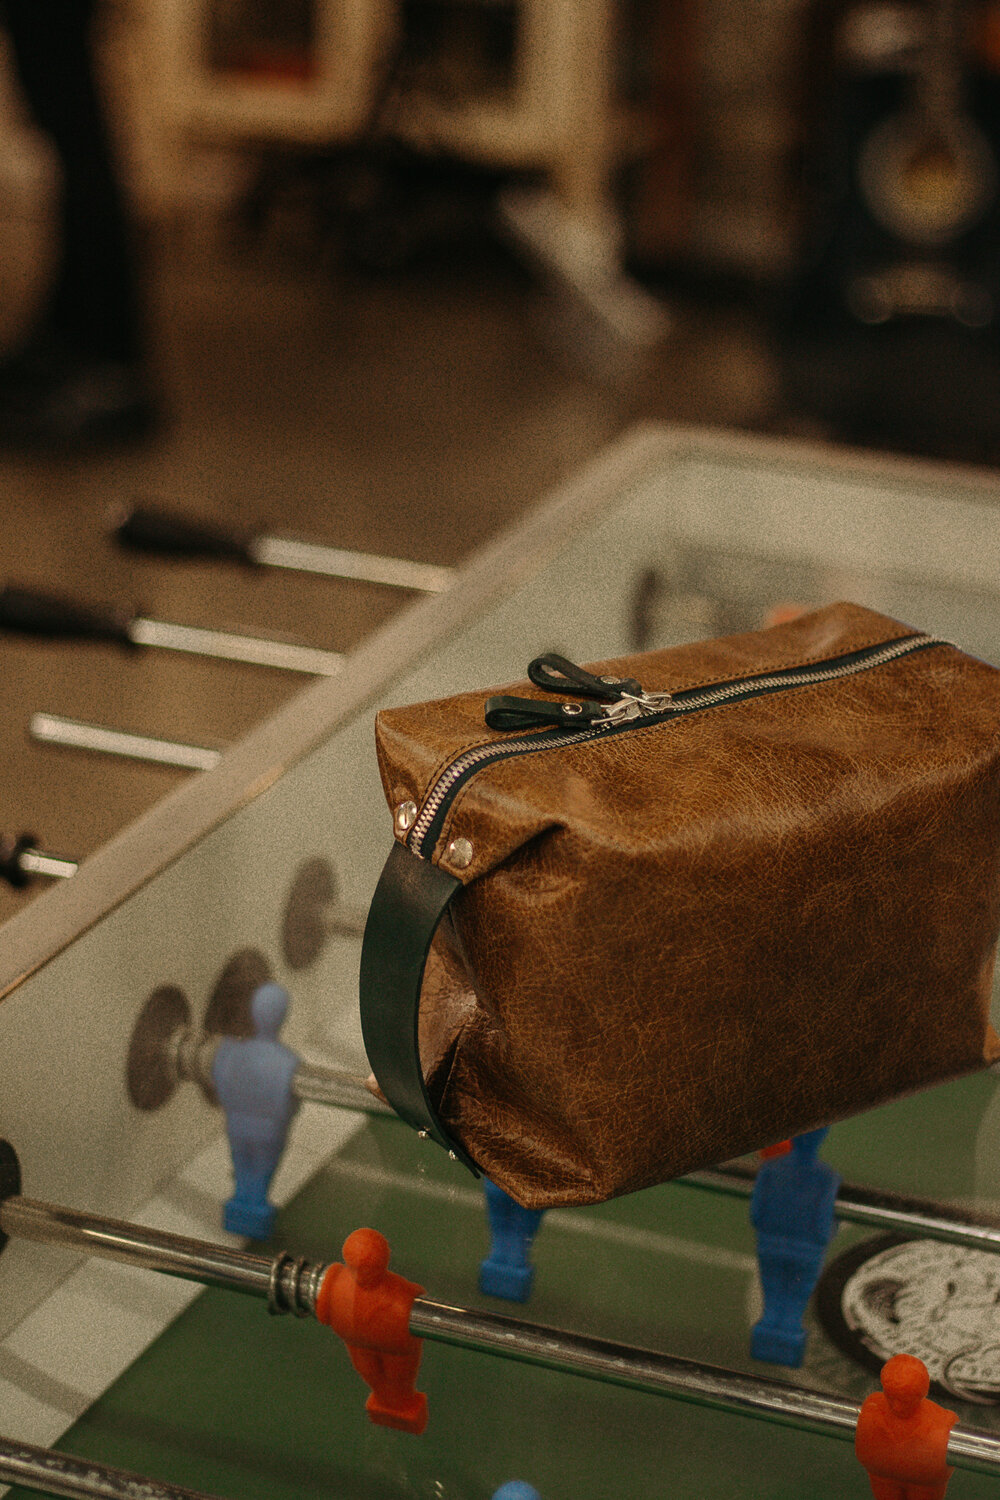 Una bolsa marrón encima de una mesa de futbolín.